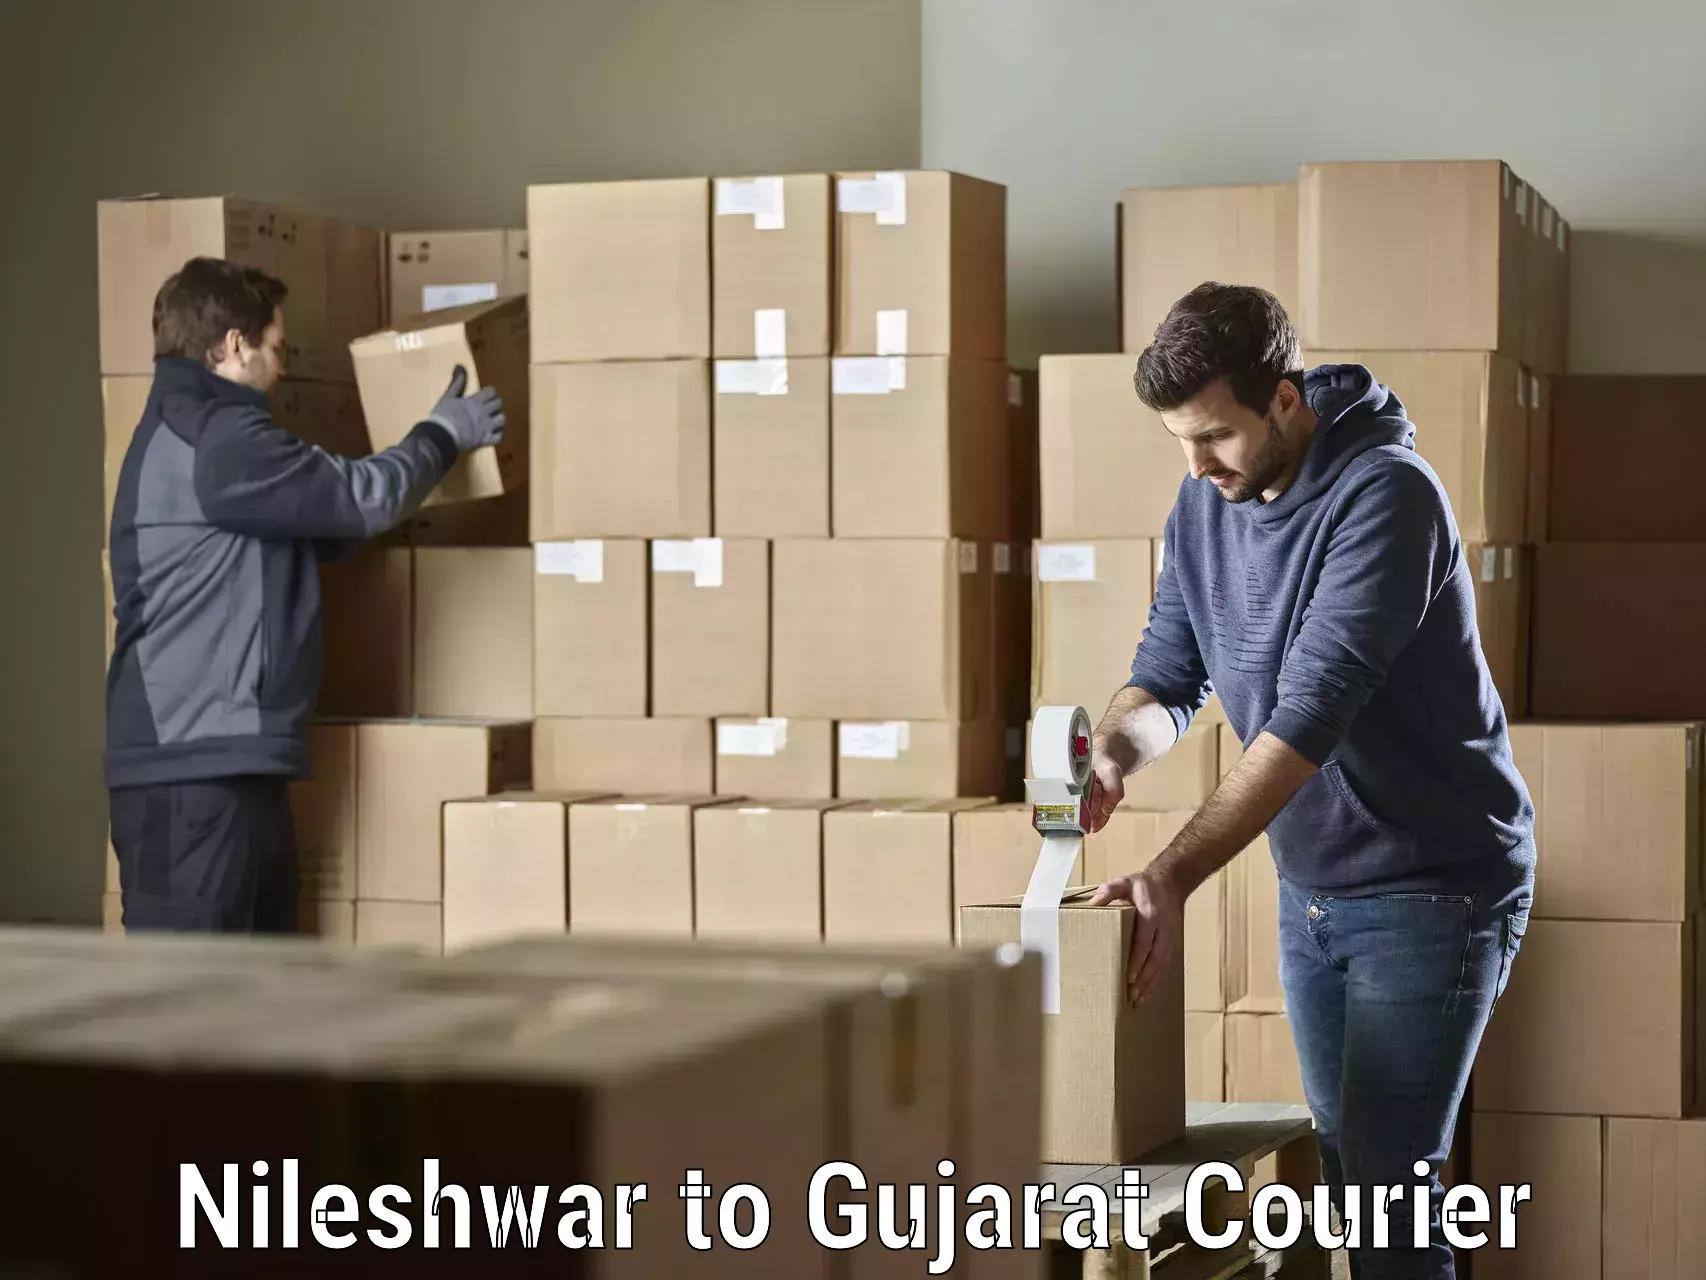 Global shipping networks Nileshwar to IIIT Surat